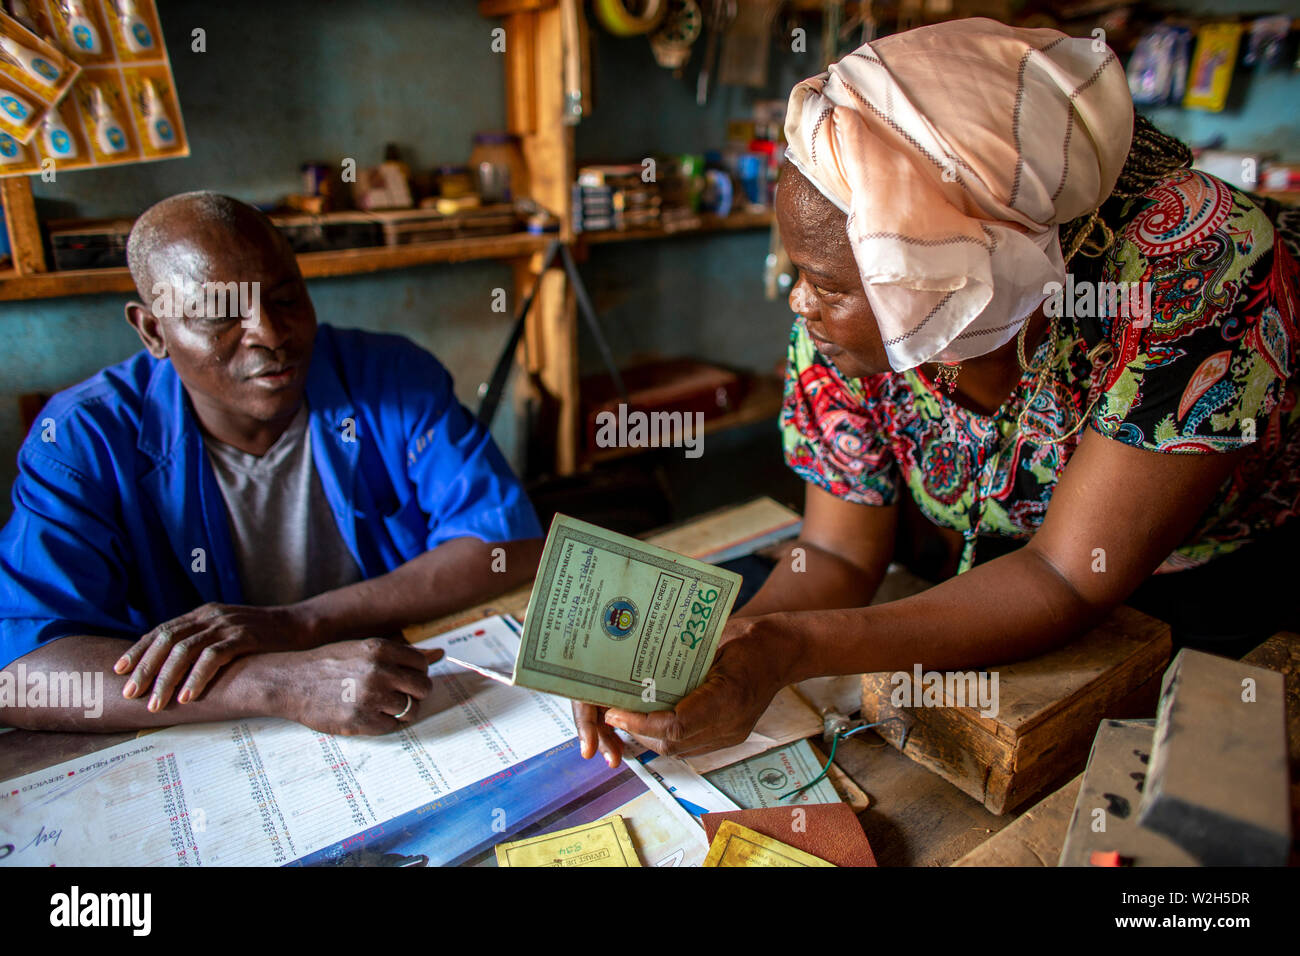 Microfinance Client in seinem Shop mit einer Mikrofinanzinstitution Mitarbeiter in Togo. Stockfoto